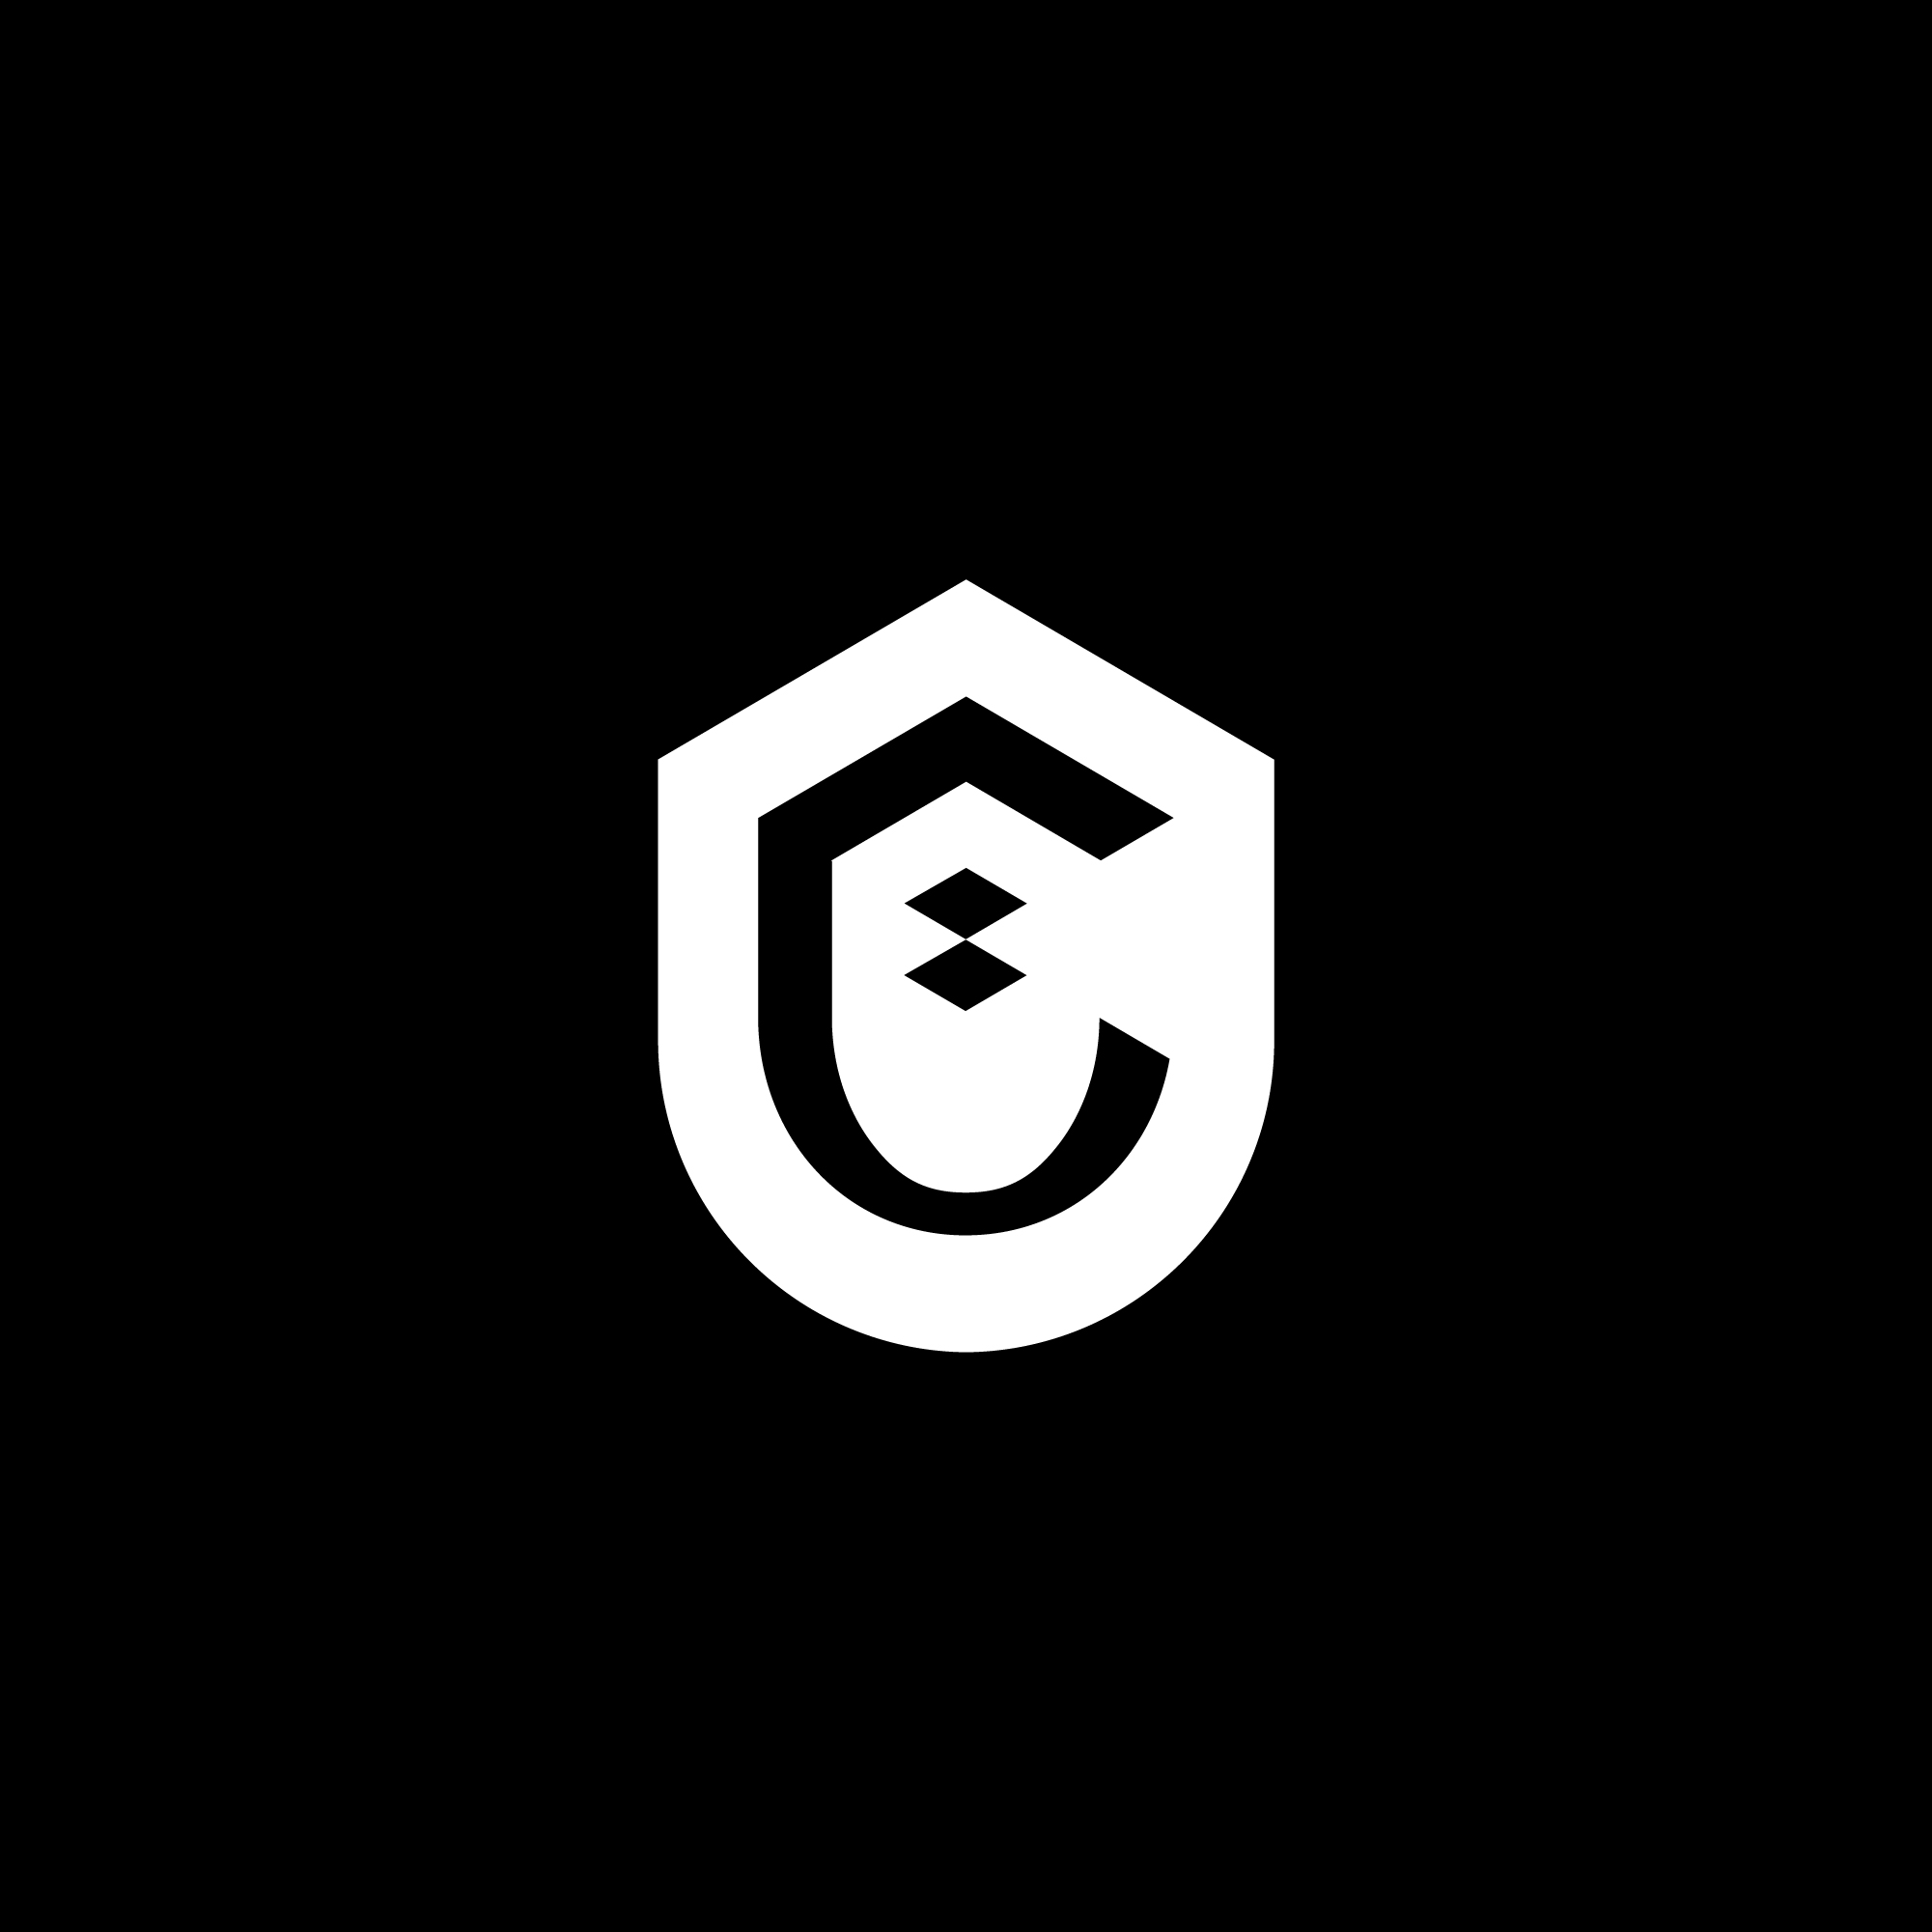 logo-design- black-white-minimalist-shield